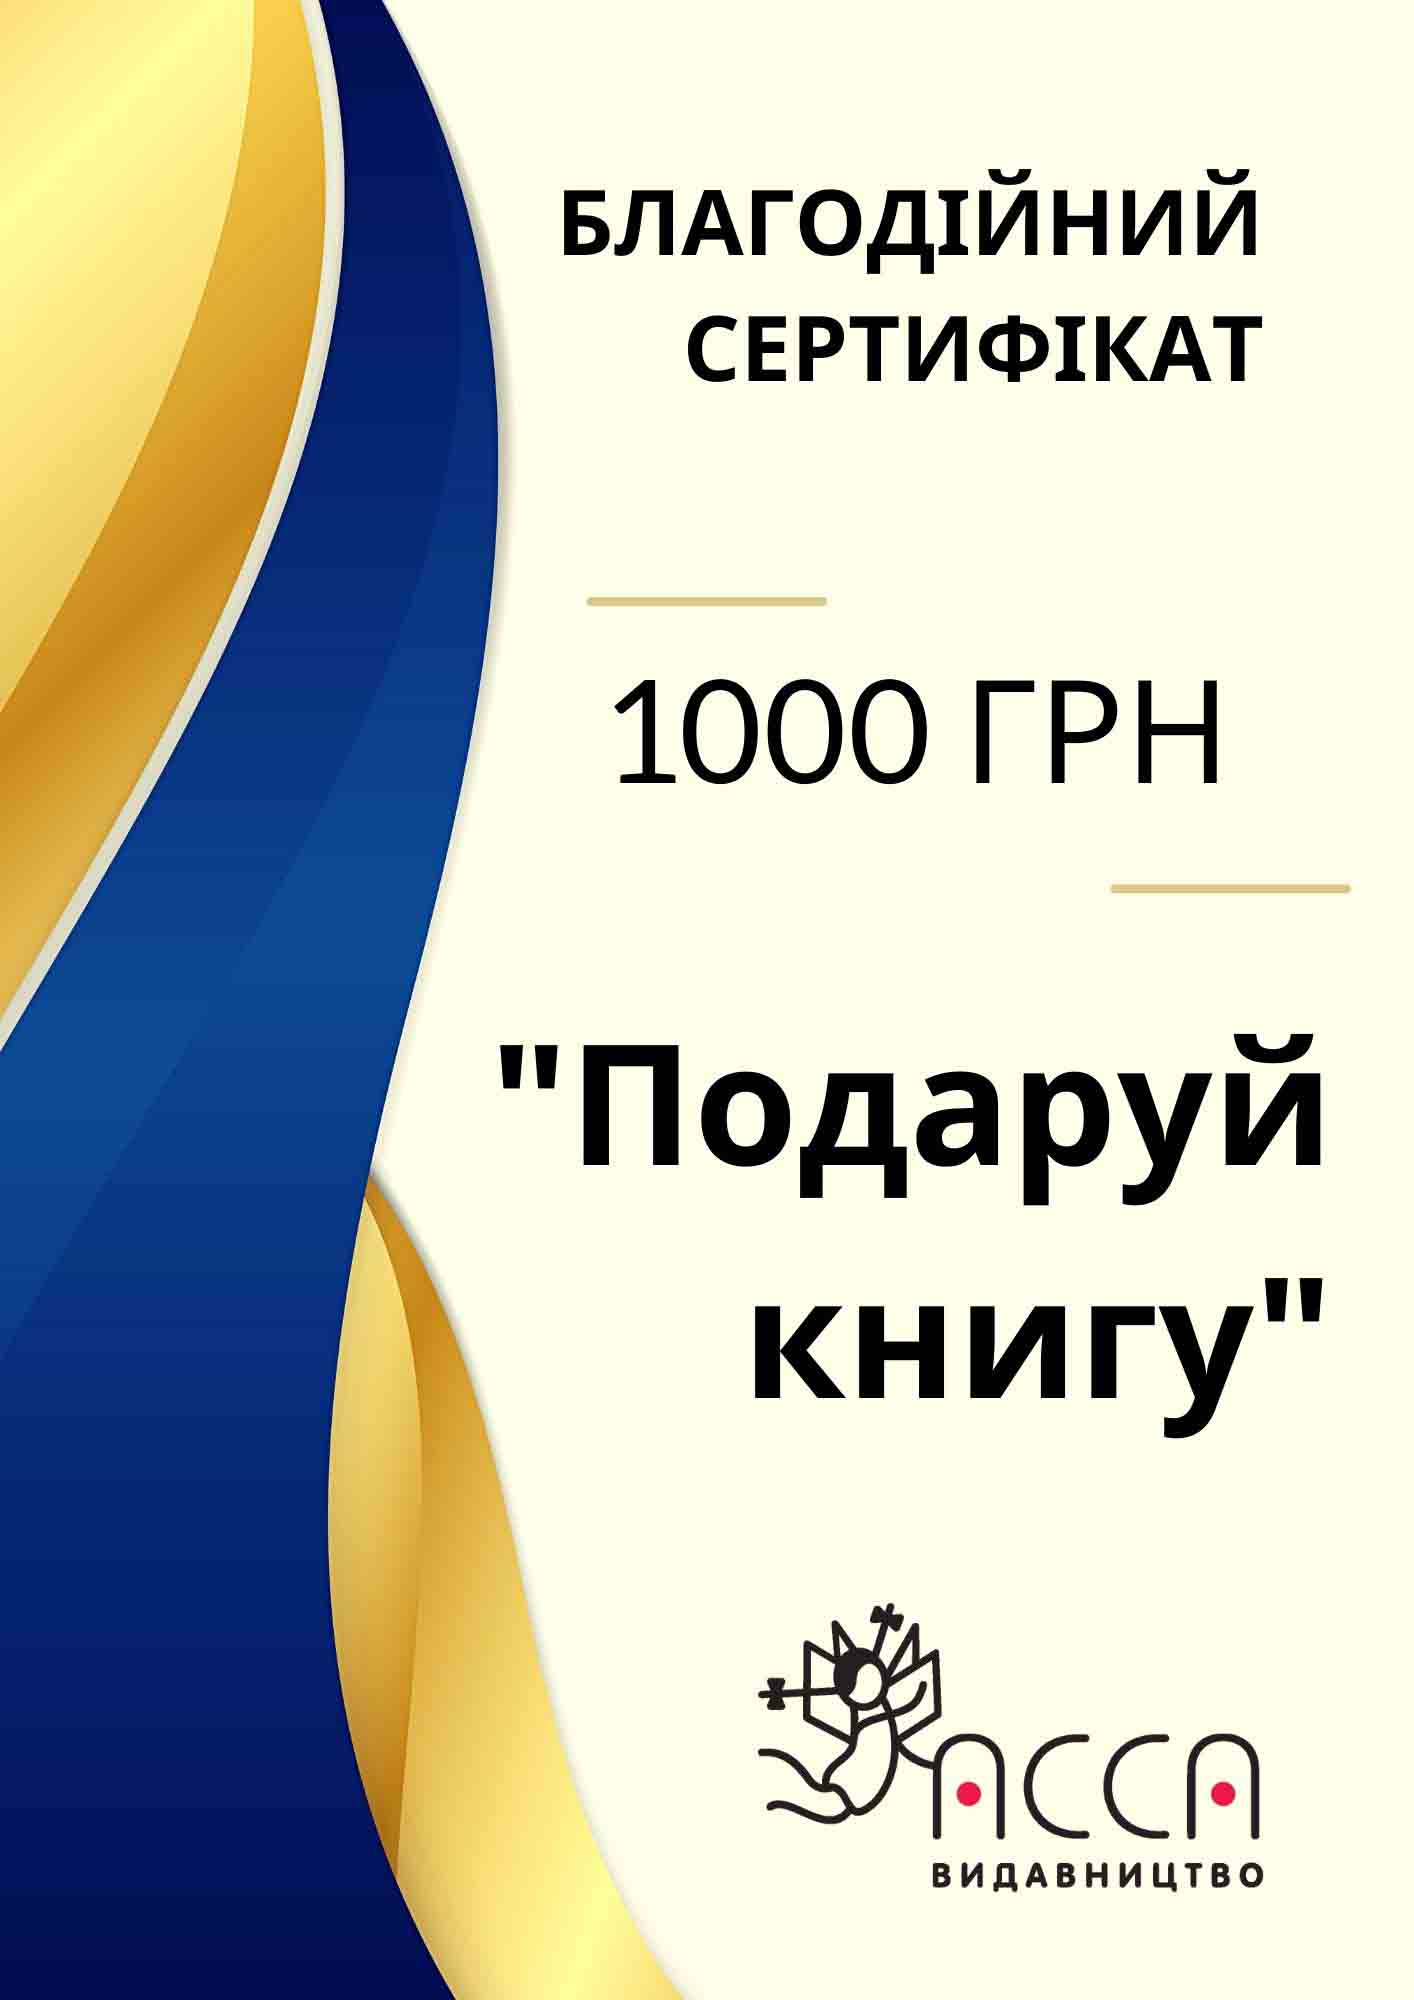 Благодійний сертифікат. Номінал 1000 грн - зображення